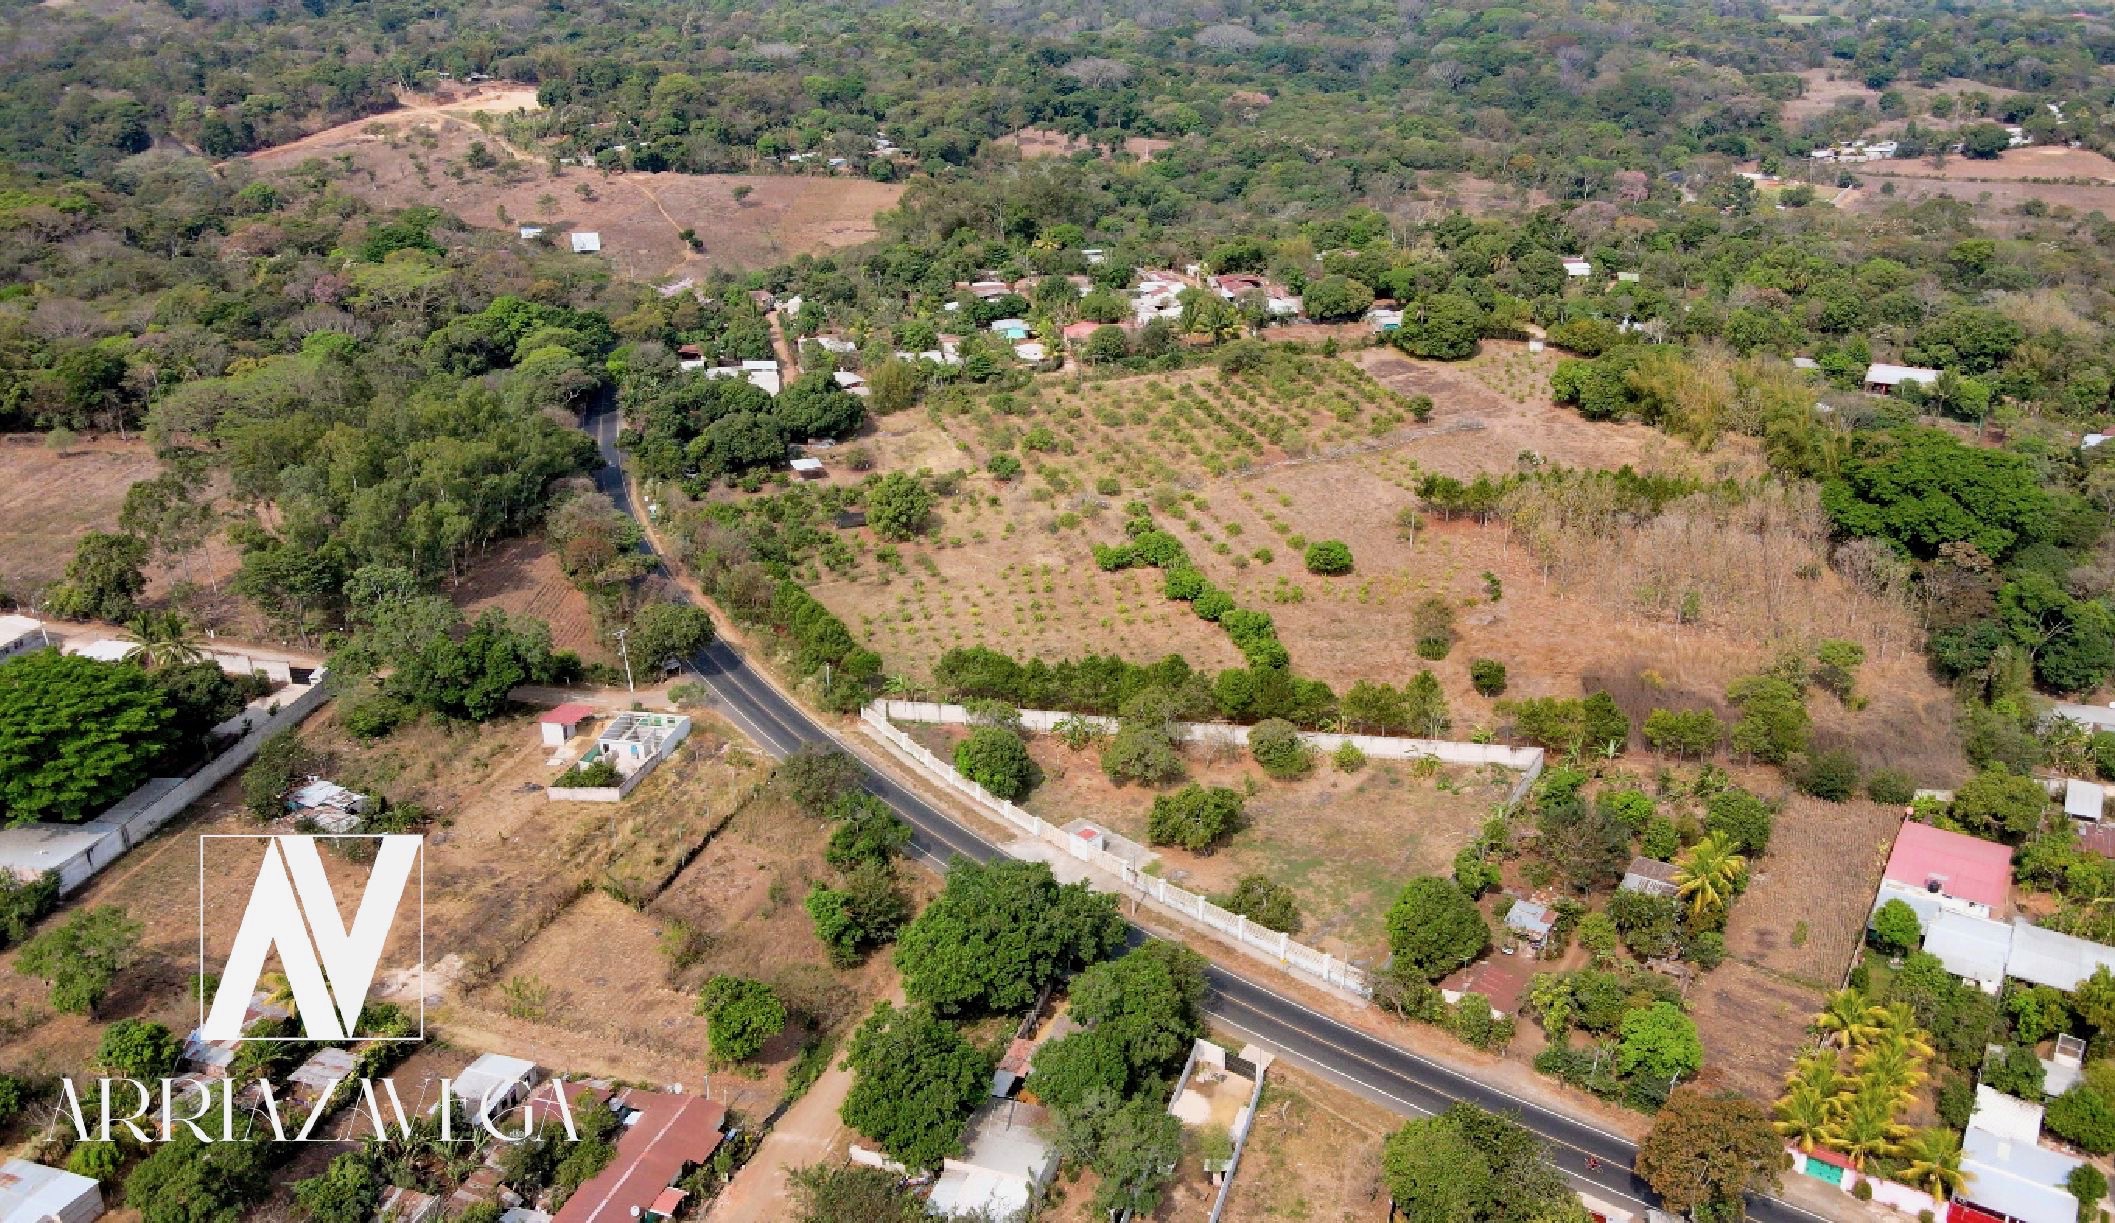 Terreno cercano a carreteras importantes en Los Cerritos, Ahuachapán